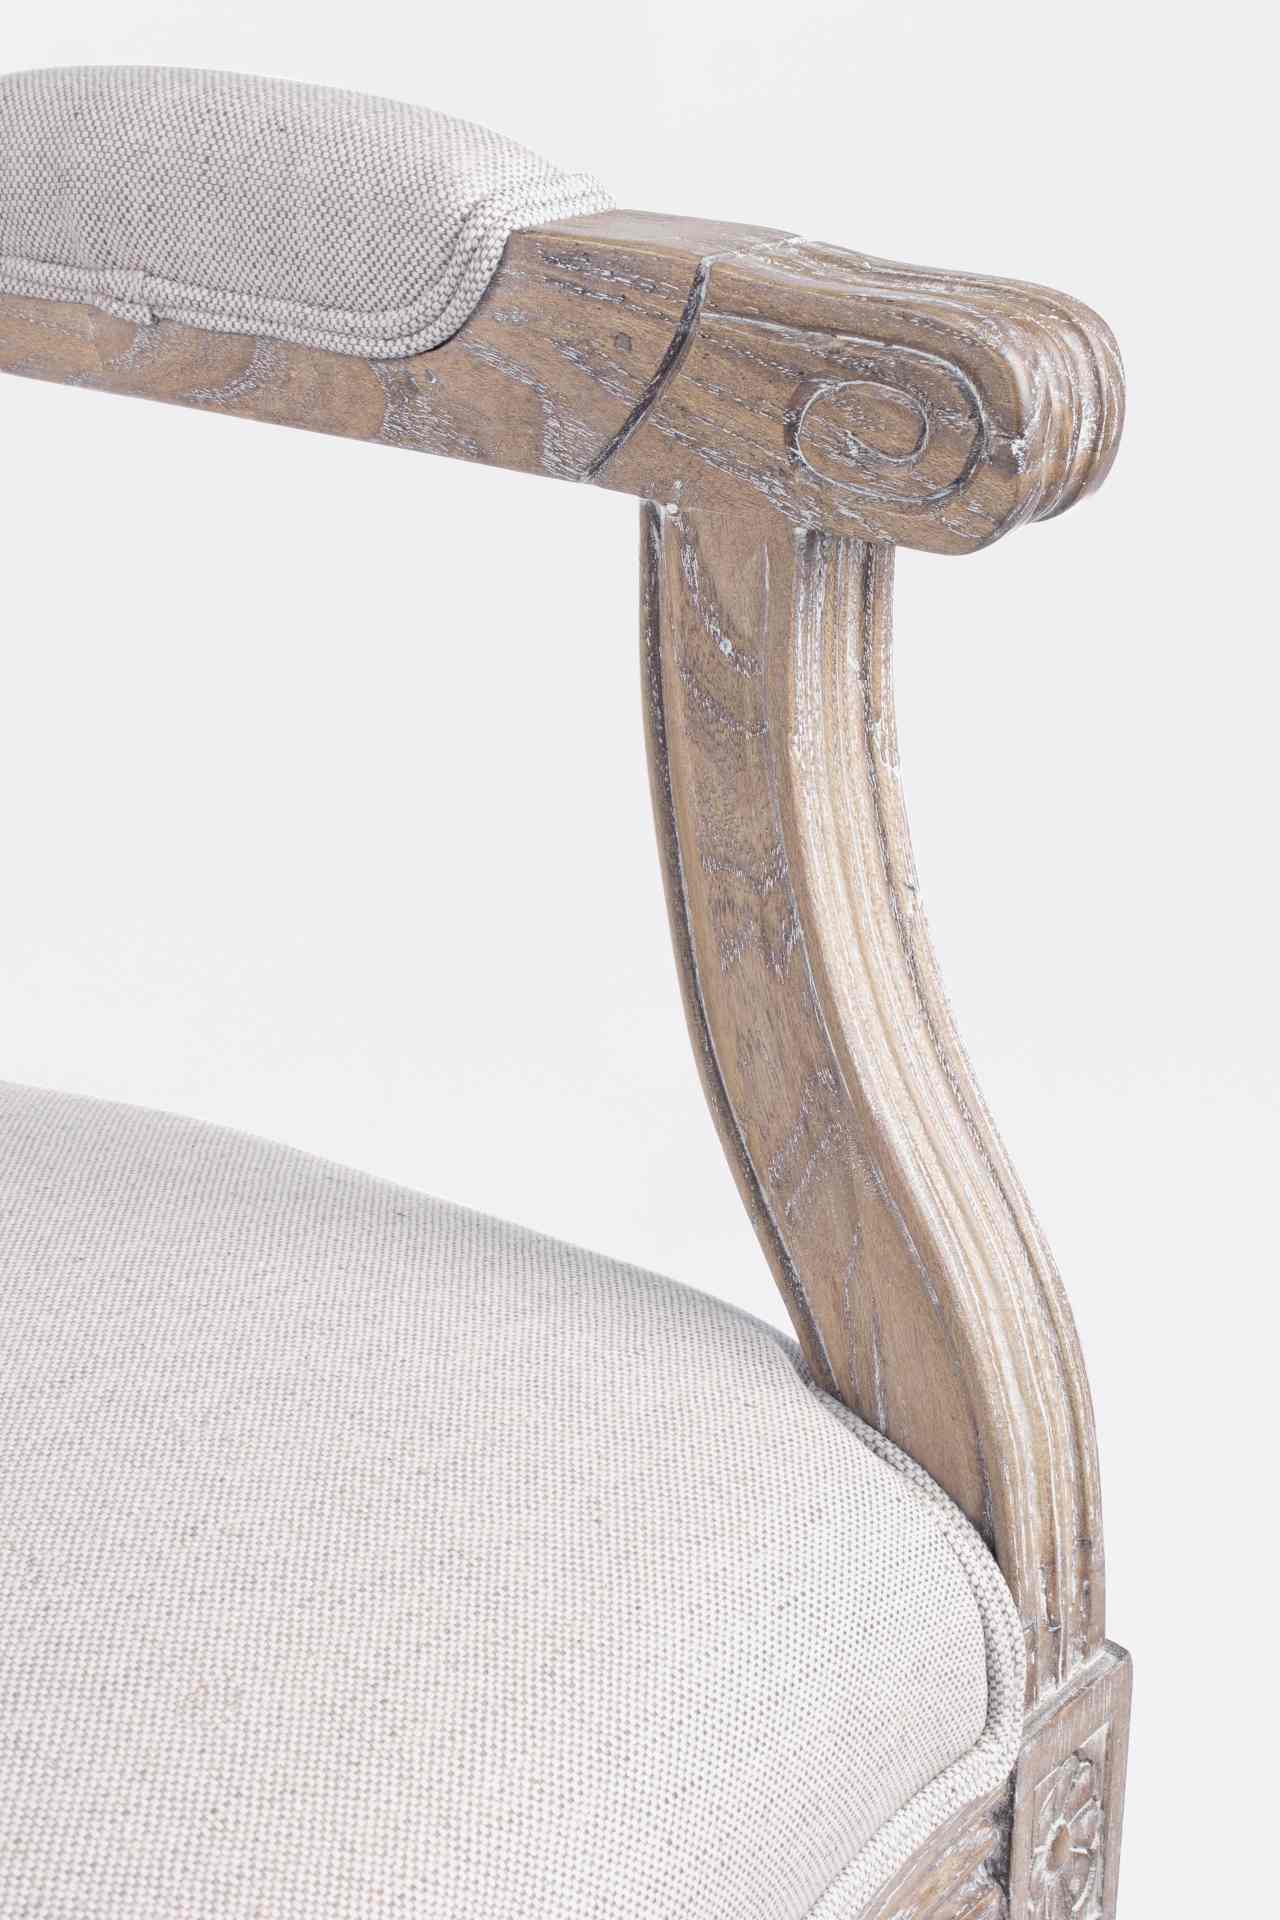 Der Stuhl Liliane überzeugt mit seinem klassischen Design. Gefertigt wurde der Stuhl aus Eschenholz, welches natürlich gehalten wurde. Die Sitzfläche ist aus Stoffbezug, welcher aus einem Mix aus Leinen und Baumwolle besteht. Die Rückenfläche besteht aus 